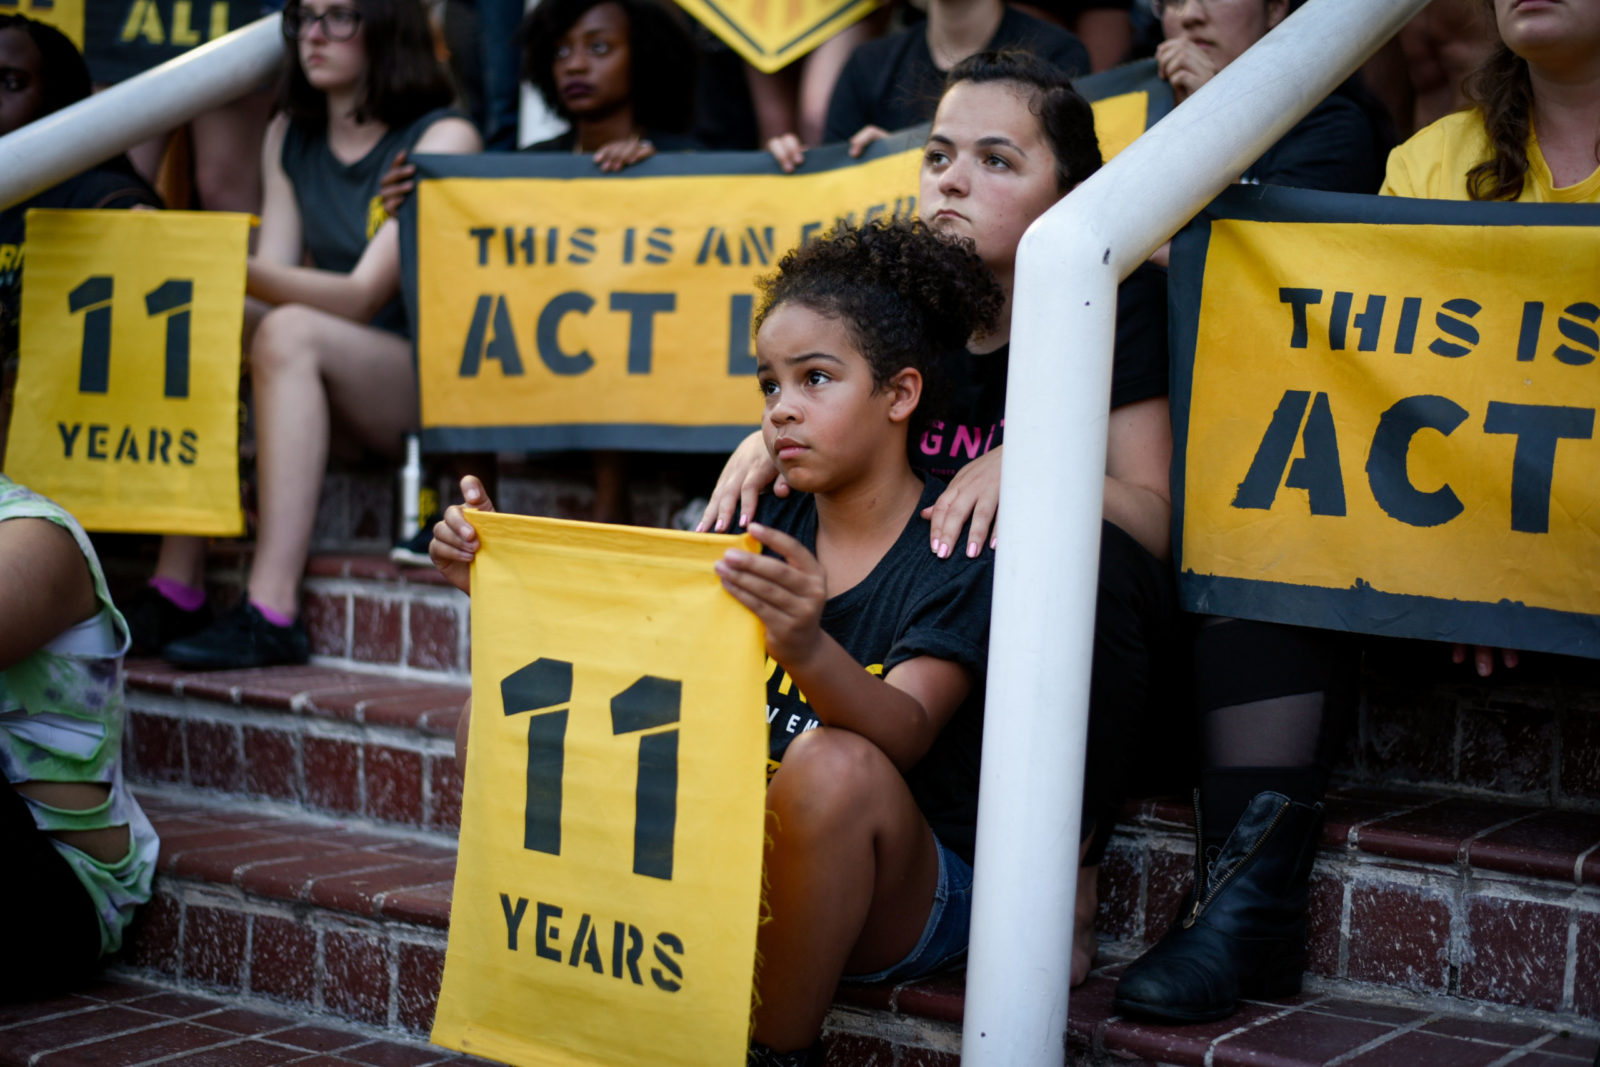 Молодой активист Sunrise сидит на ступенях штаб-квартиры DNC в округе Колумбия с табличкой «11 лет». Ее окружают коллеги-активисты.